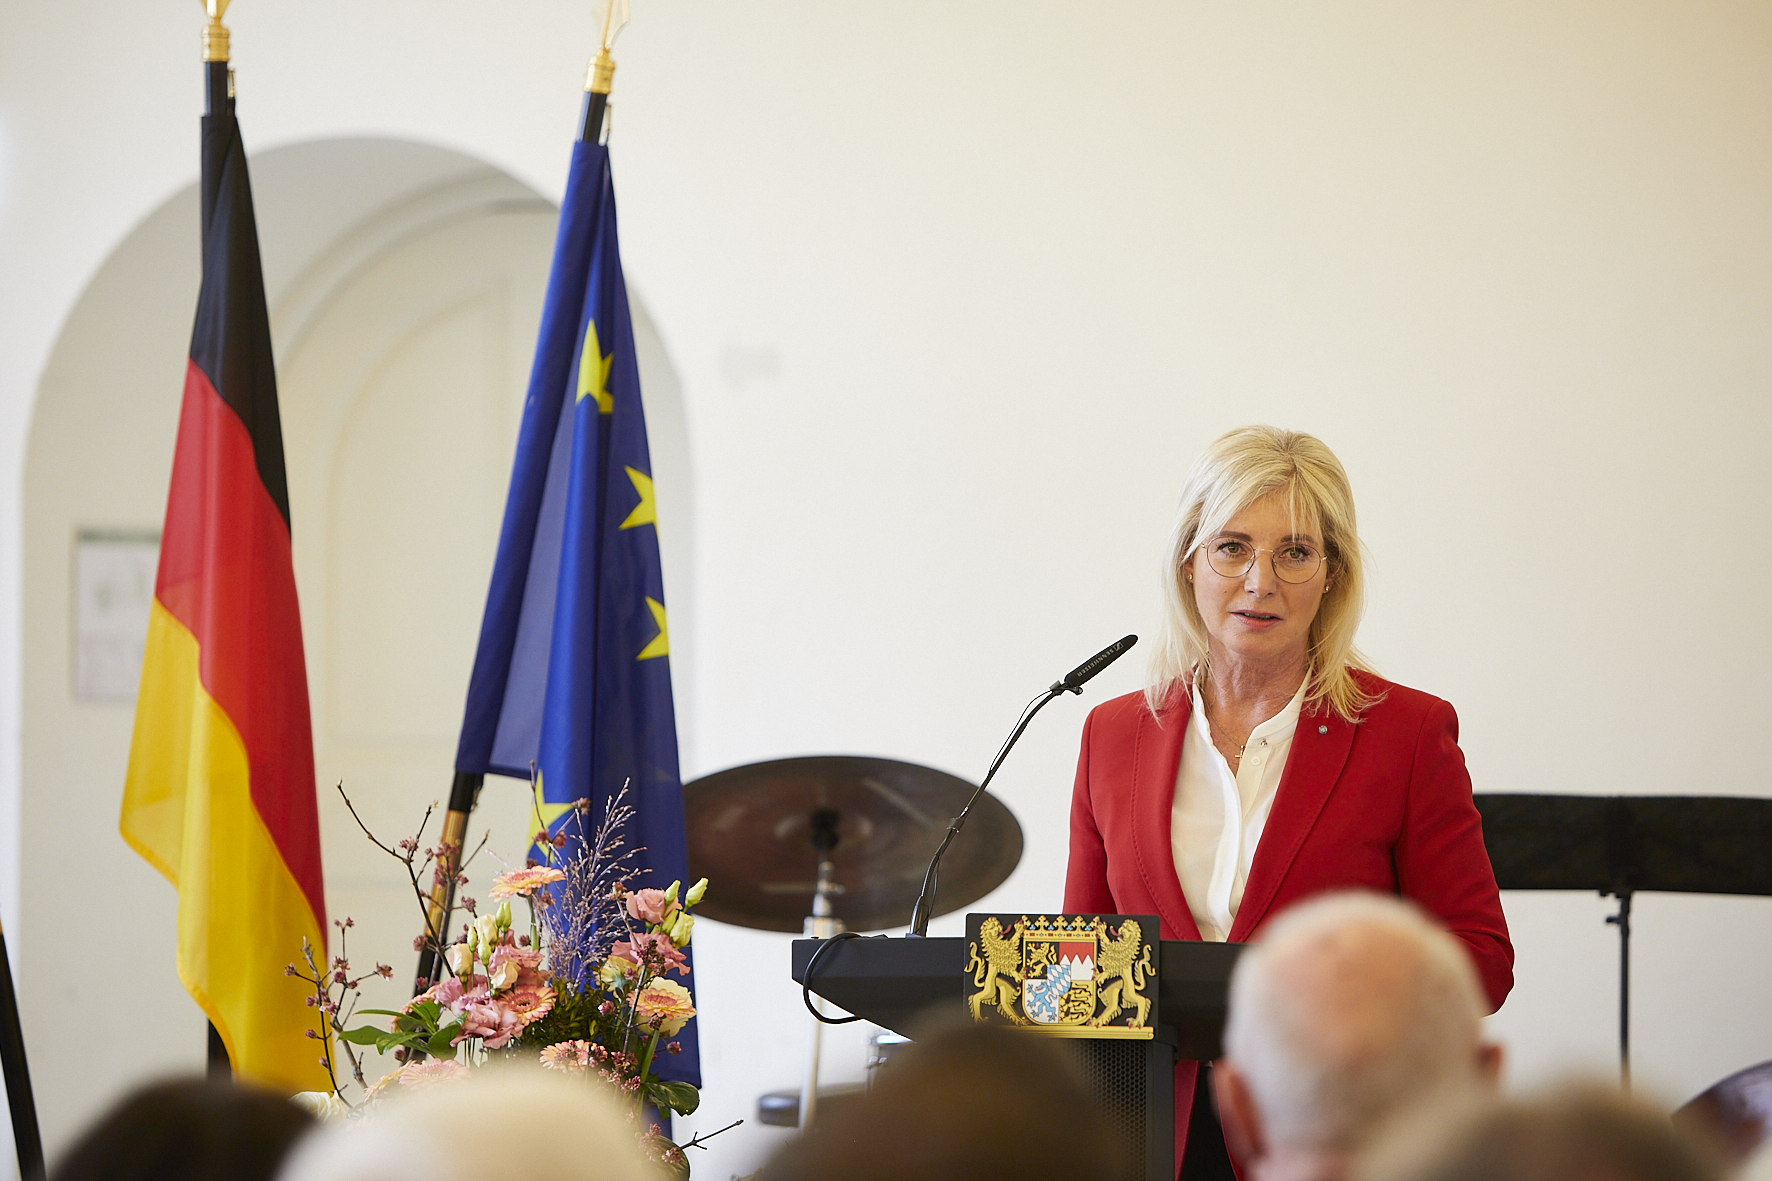 Staatsministerin Ulrike Scharf hält ein Grußwort bei der Verleihung des Bundesverdienstkreuzes am Bande.